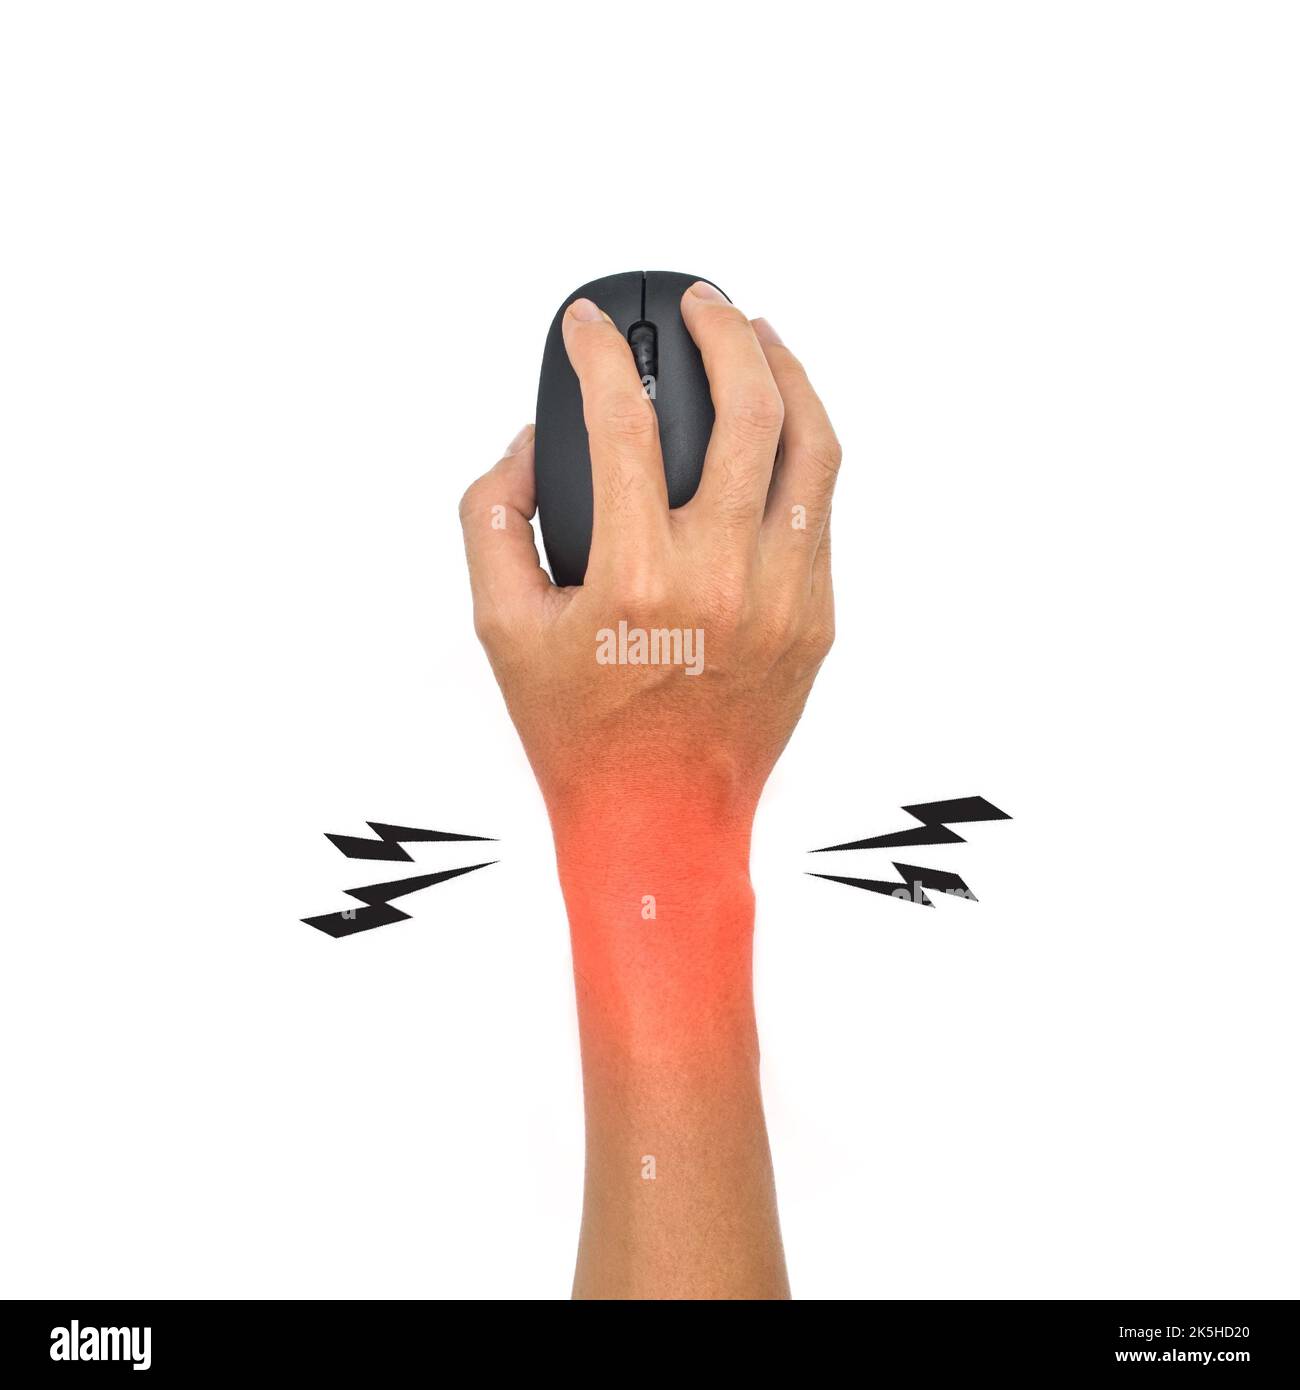 Sindrome della mano del topo nel giovane asiatico. Dolore alla base della mano o del polso dovuto all'uso prolungato del mouse del computer. Foto Stock